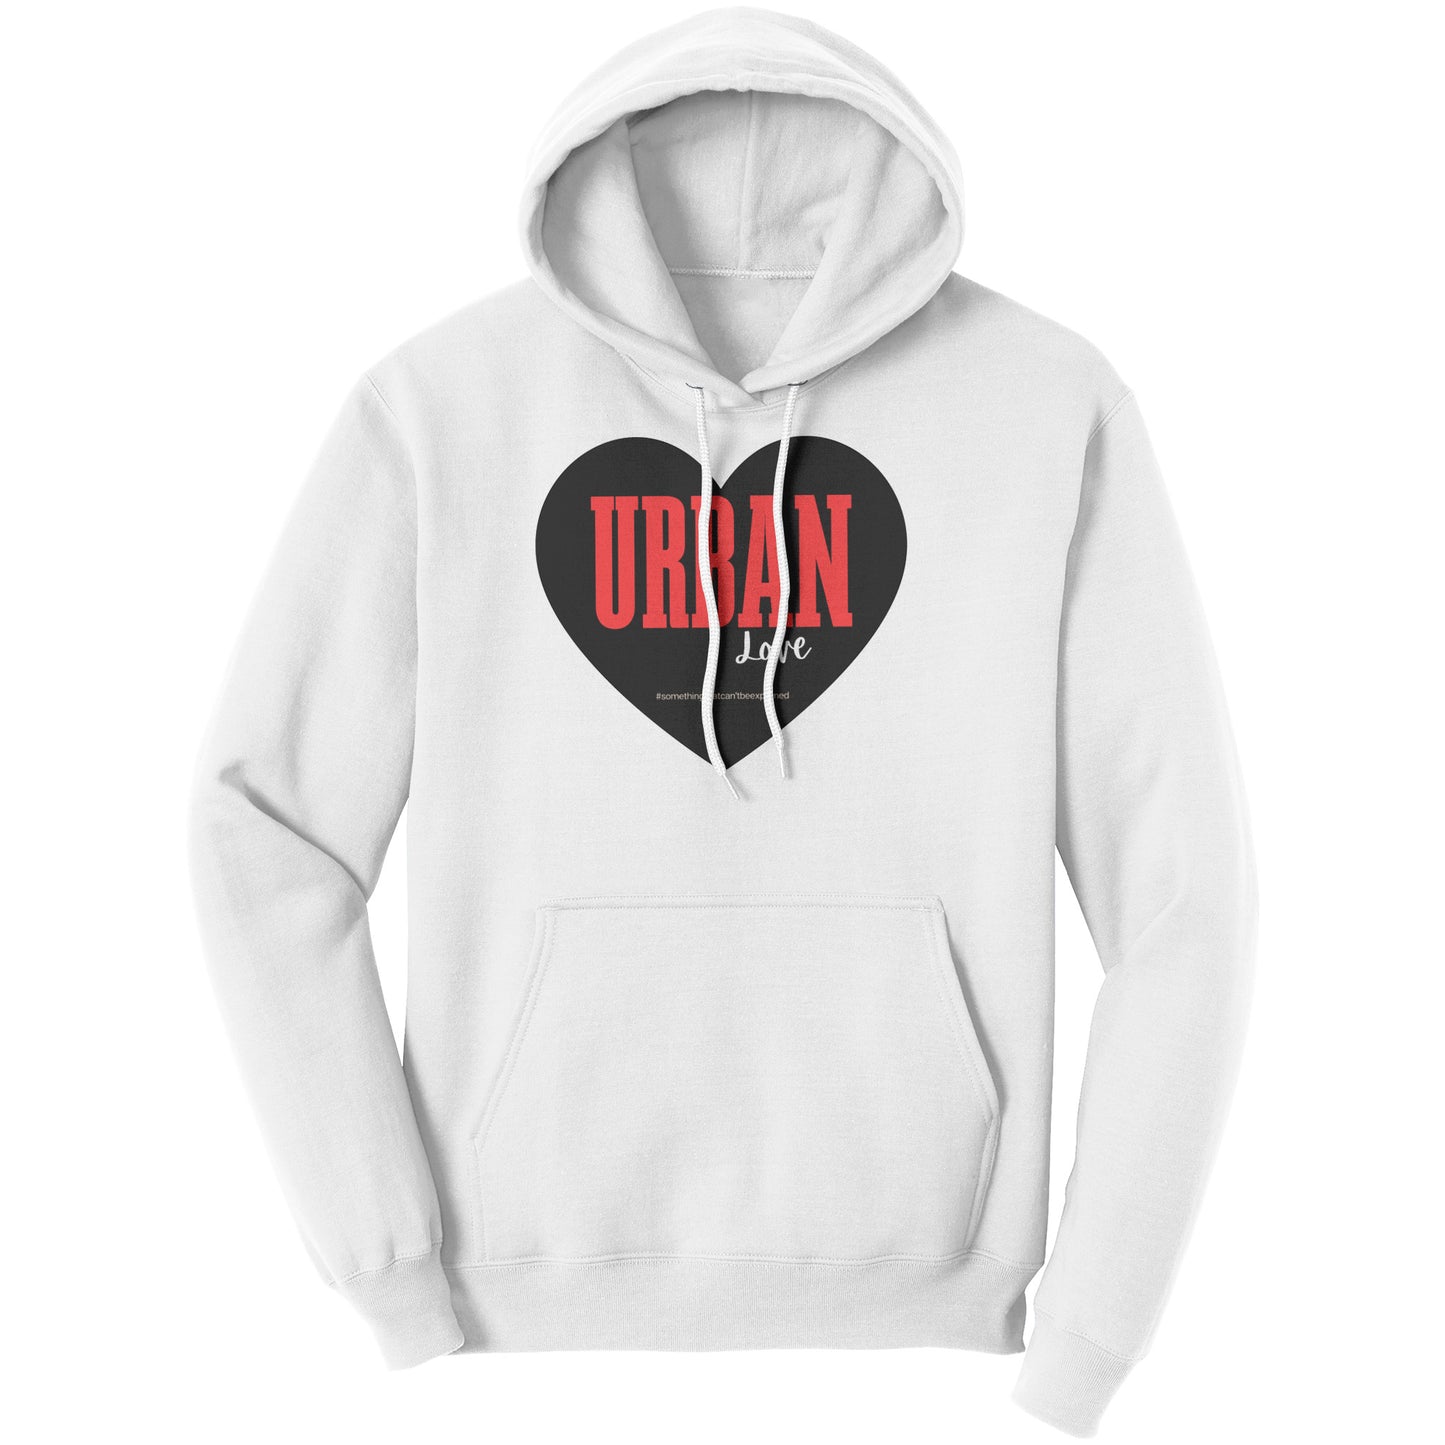 Urban Love unisex hoodie